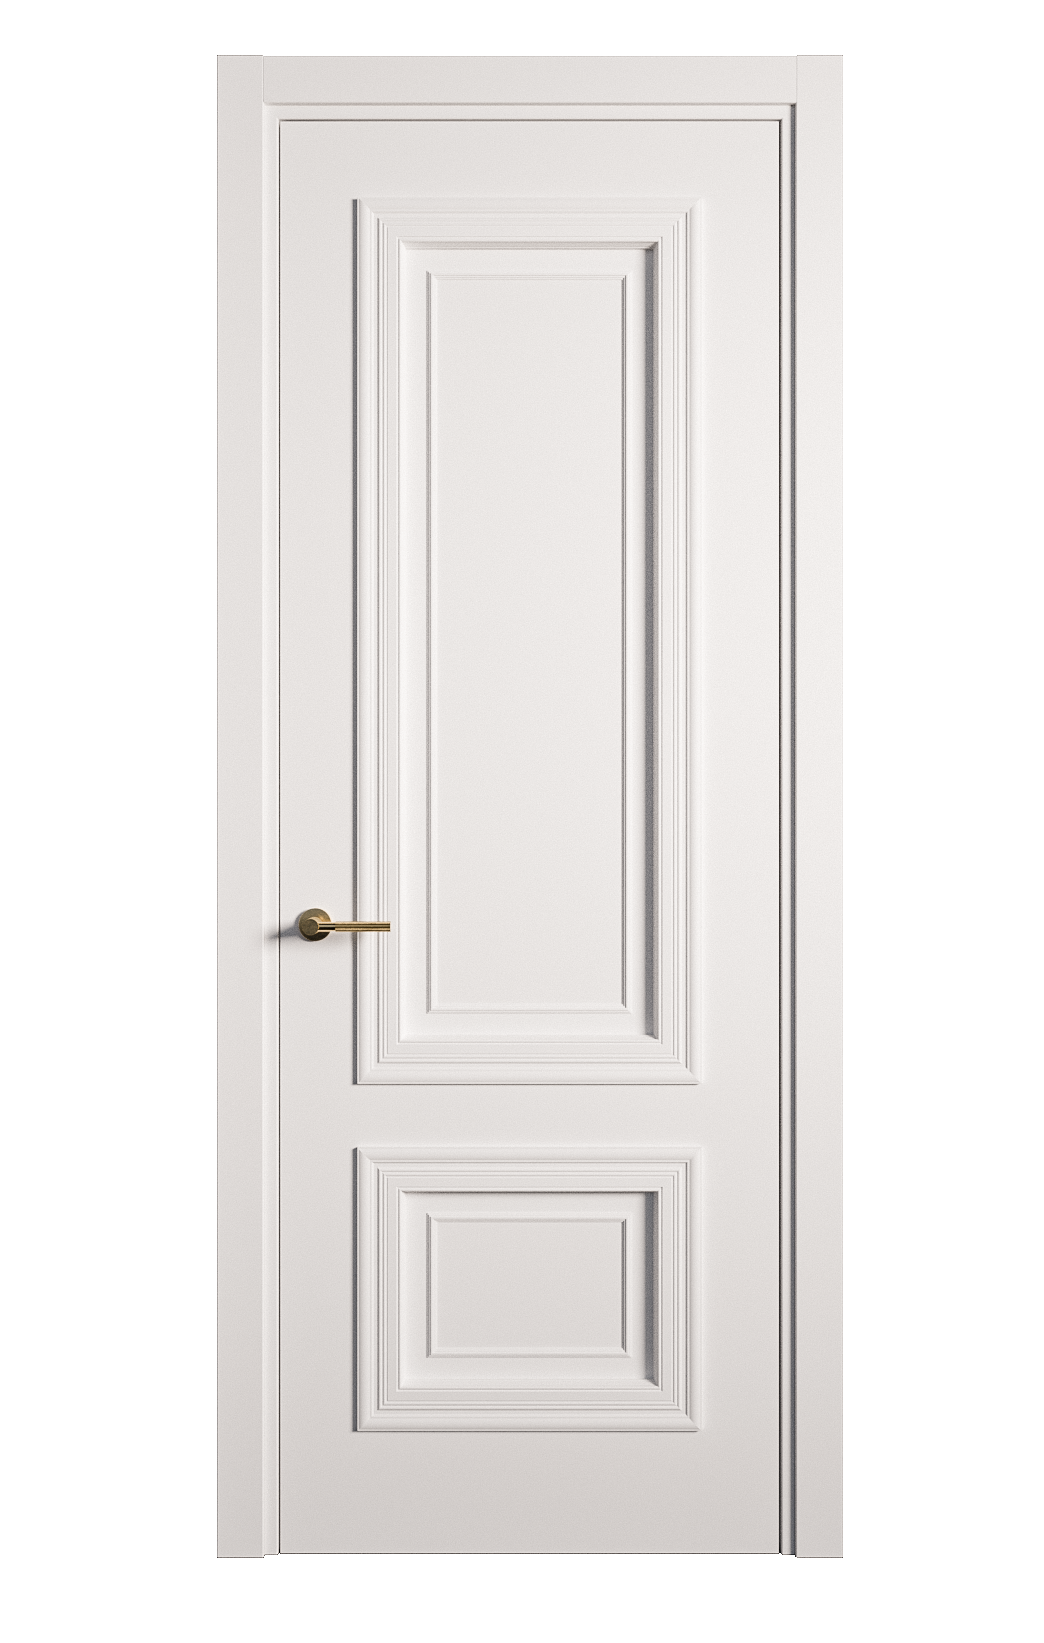 Межкомнатная дверь Мальта-1 глухая эмаль ral 9003 26980